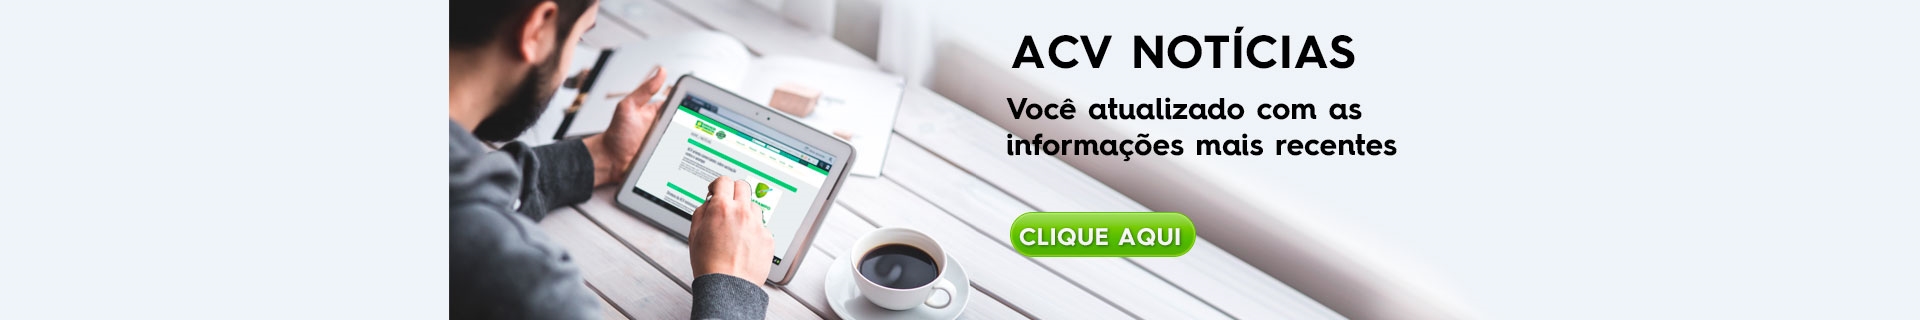 ACV apresenta calendário do comércio de Votuporanga para os jogos do Brasil  na Copa - Jornal A Cidade de Votuporanga